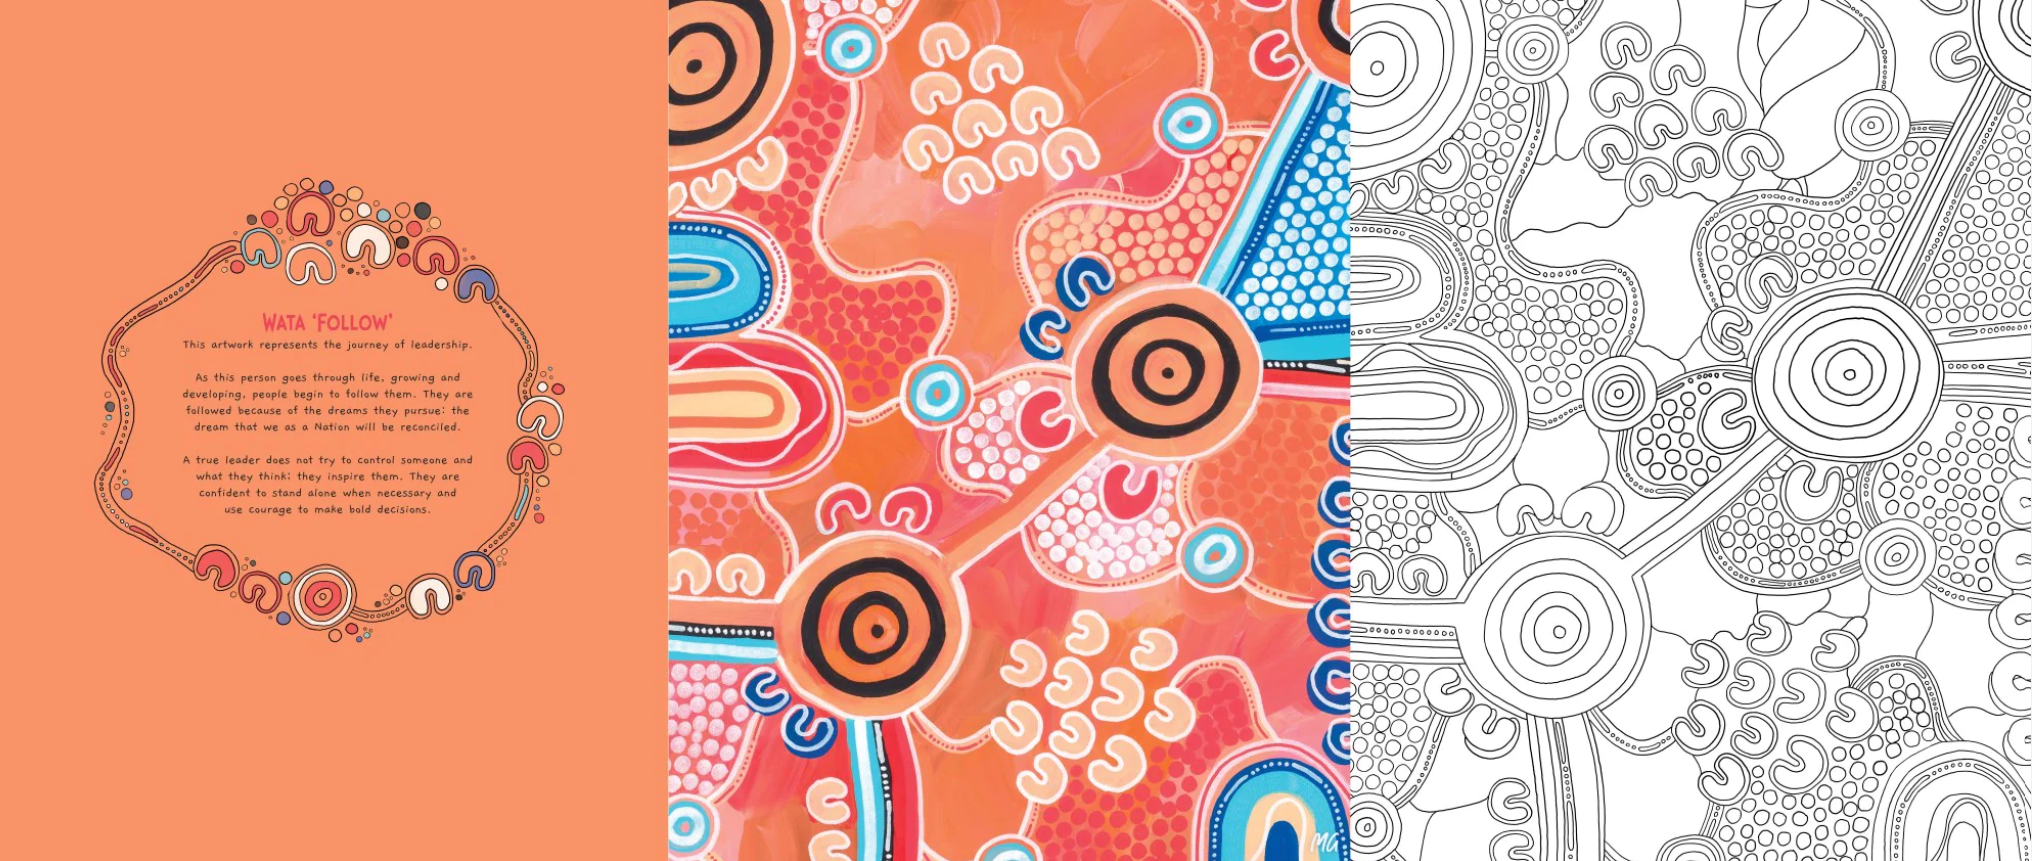 Merindah-Gunya Lakes Press Aboriginal Colouring in Book Bayley Mifsud